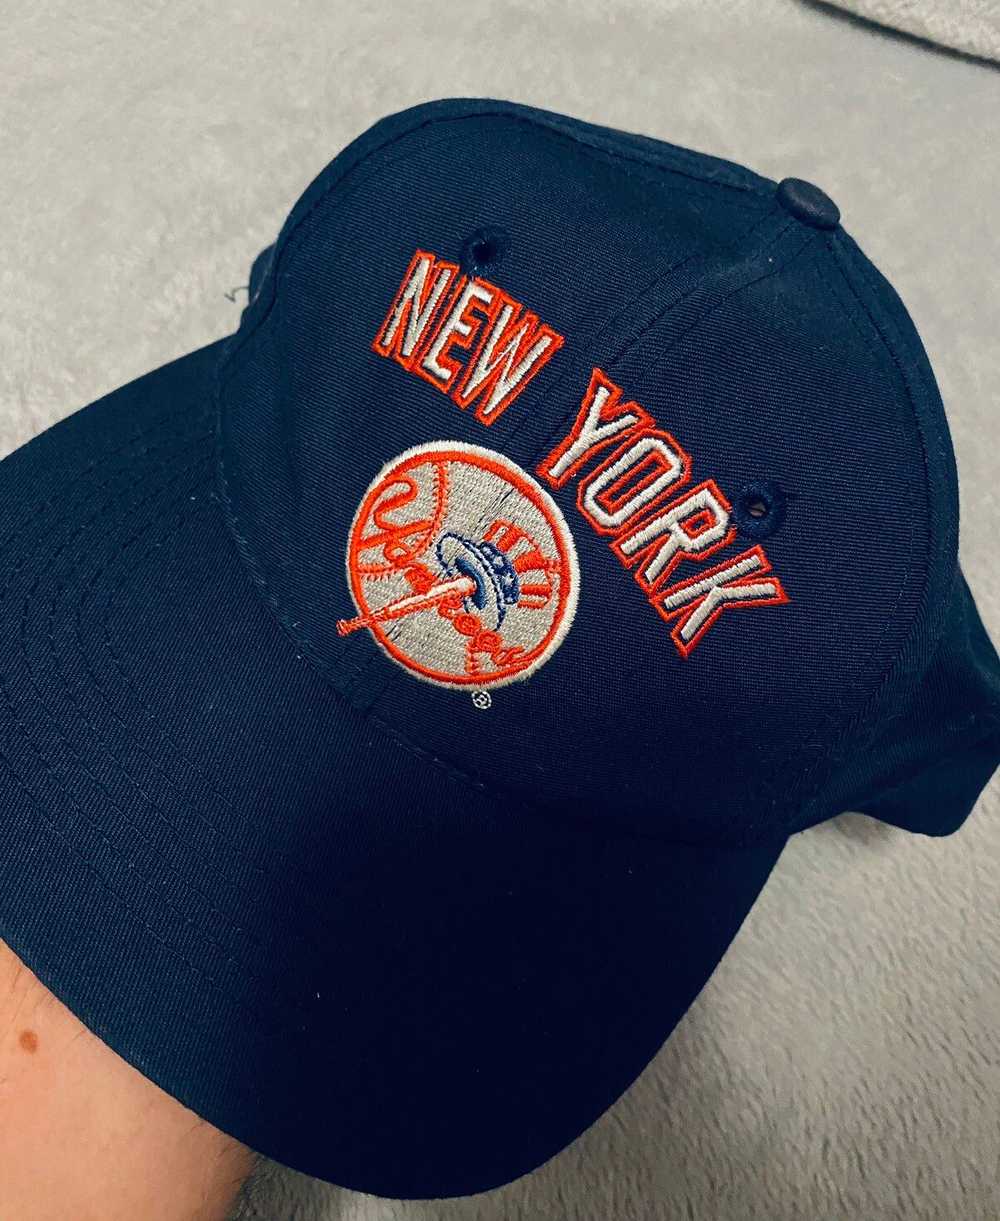 New York Yankees × Streetwear × Vintage Vintage N… - image 1